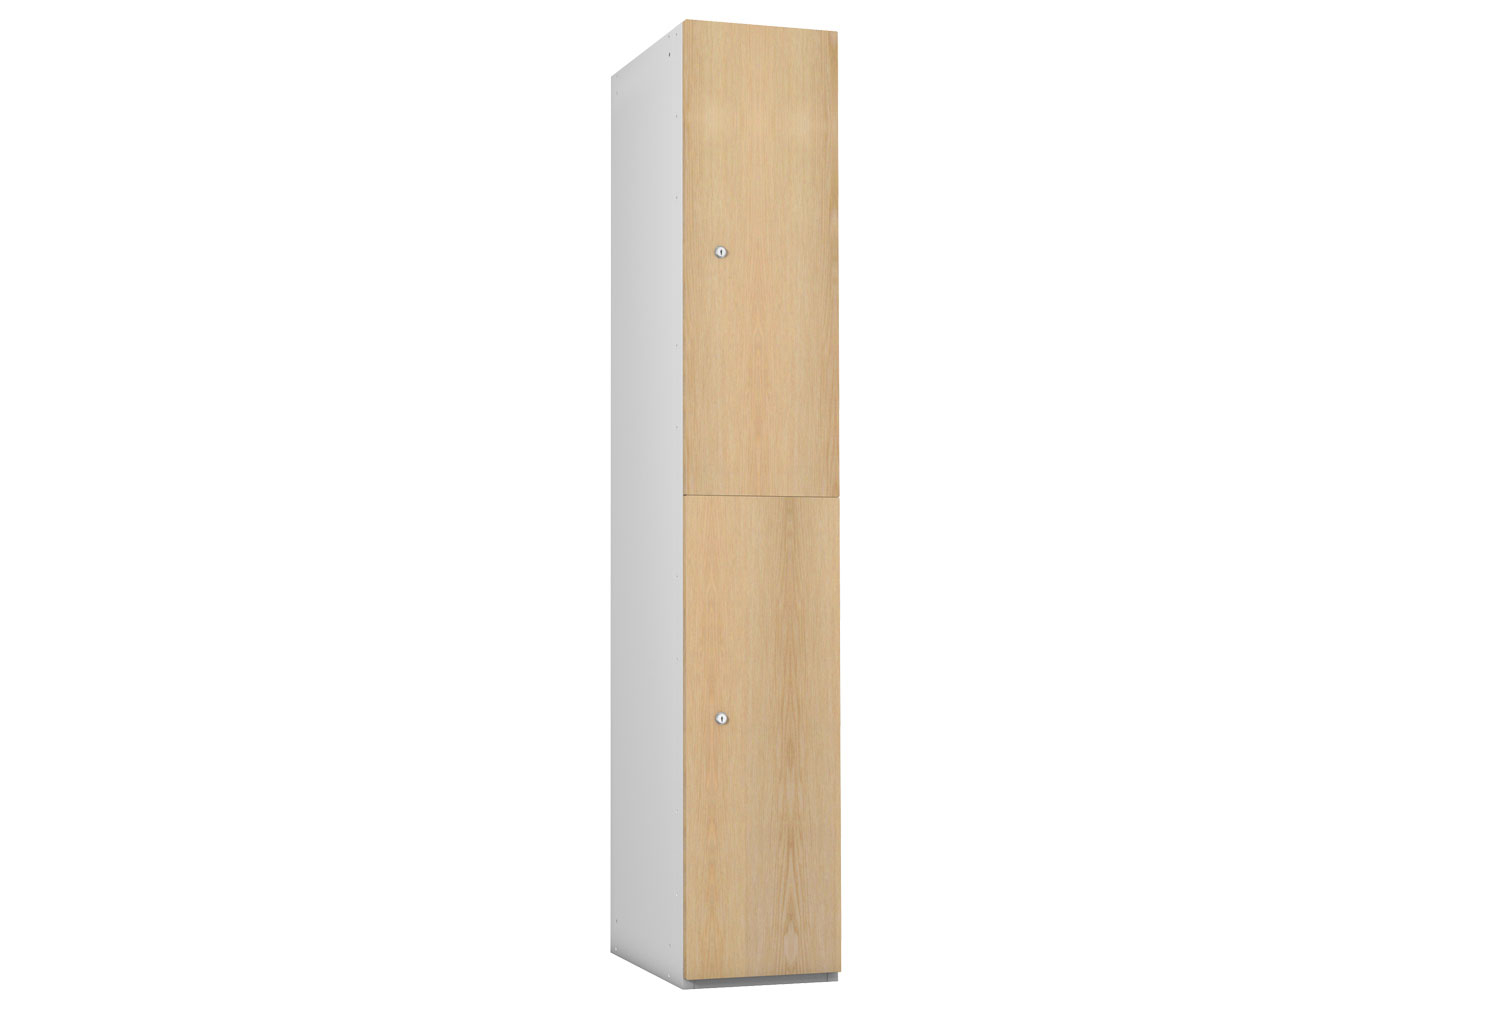 Probe TimberBox Wood Effect 2 Door Locker